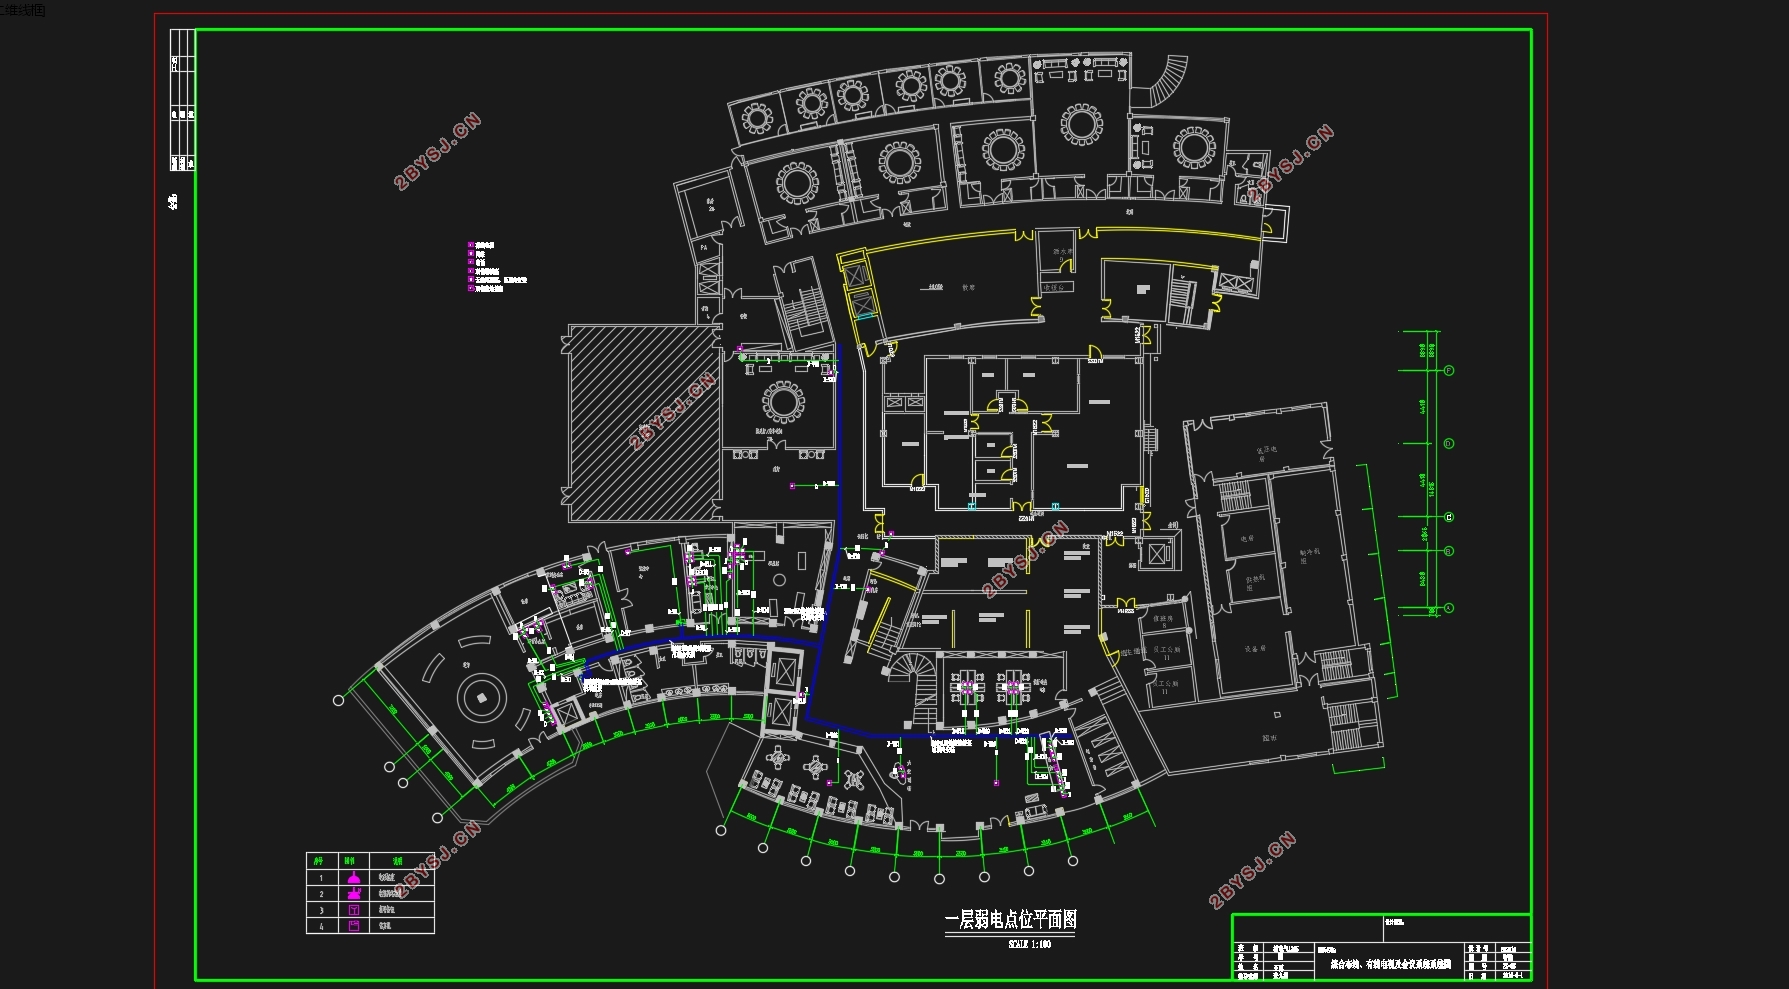 三星级酒店宾馆弱电工程(大楼电气及智能化系统)设计(含CAD图)